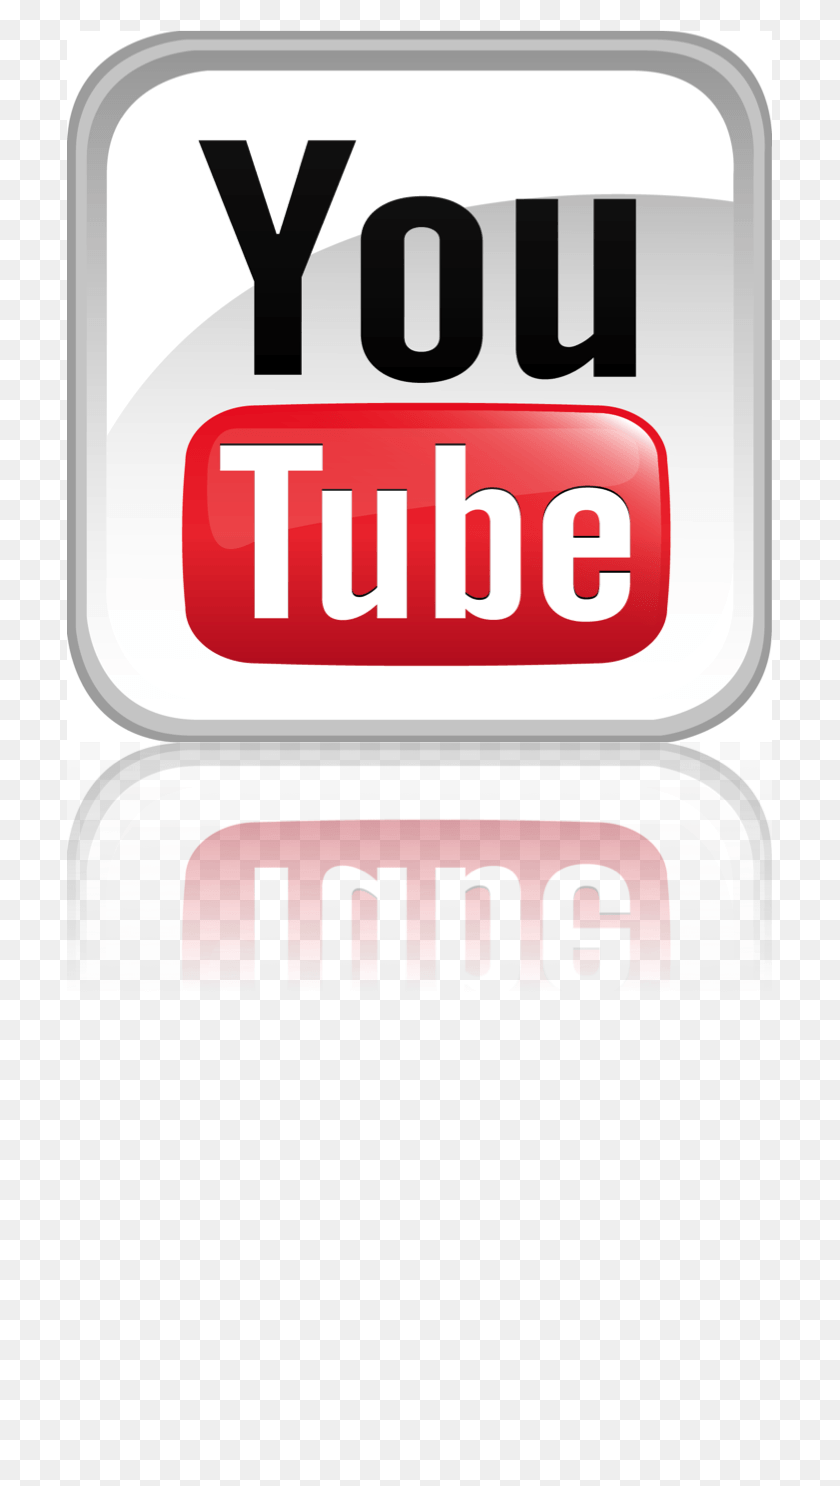 709x1426 Использование Видео Для Достижения Общедоступных Значков Youtube, Word, Label, Text Hd Png Download